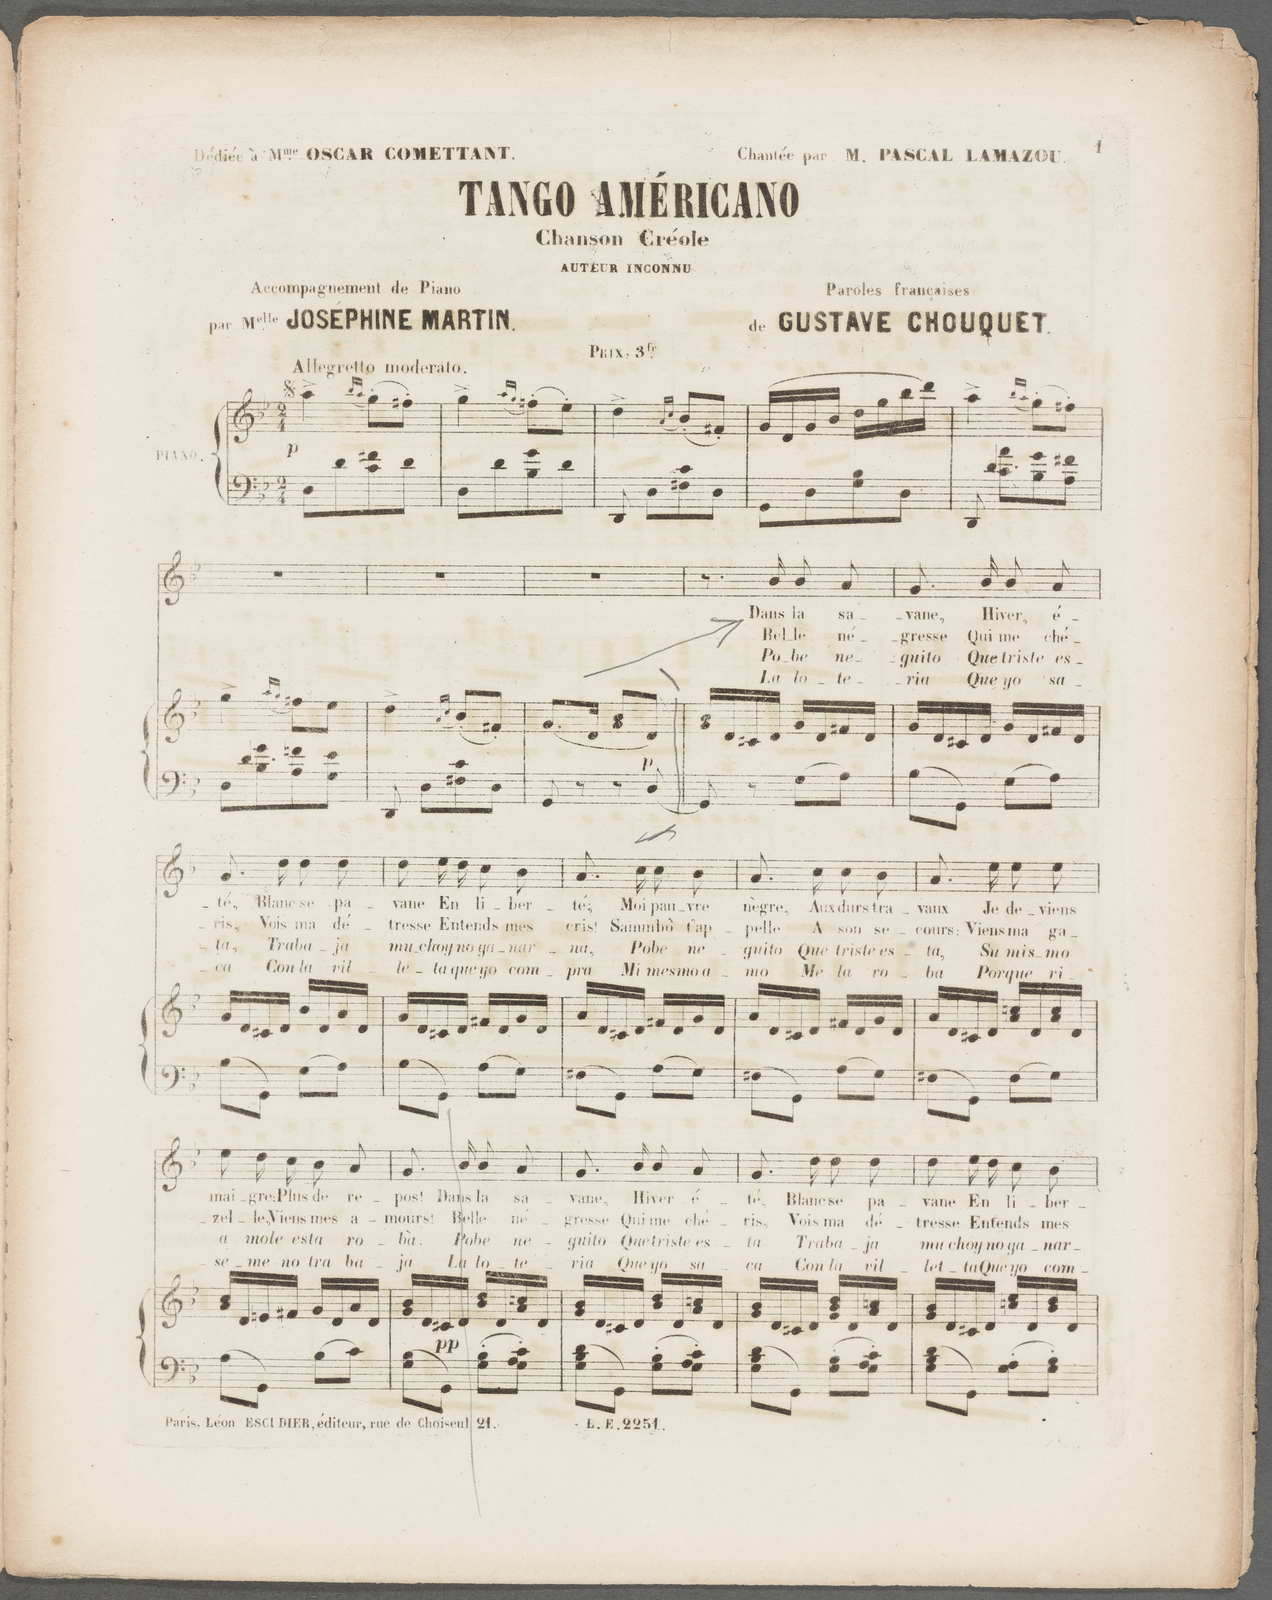 Tango Americano Chanson Creole New York Public Library S Public Domain Image